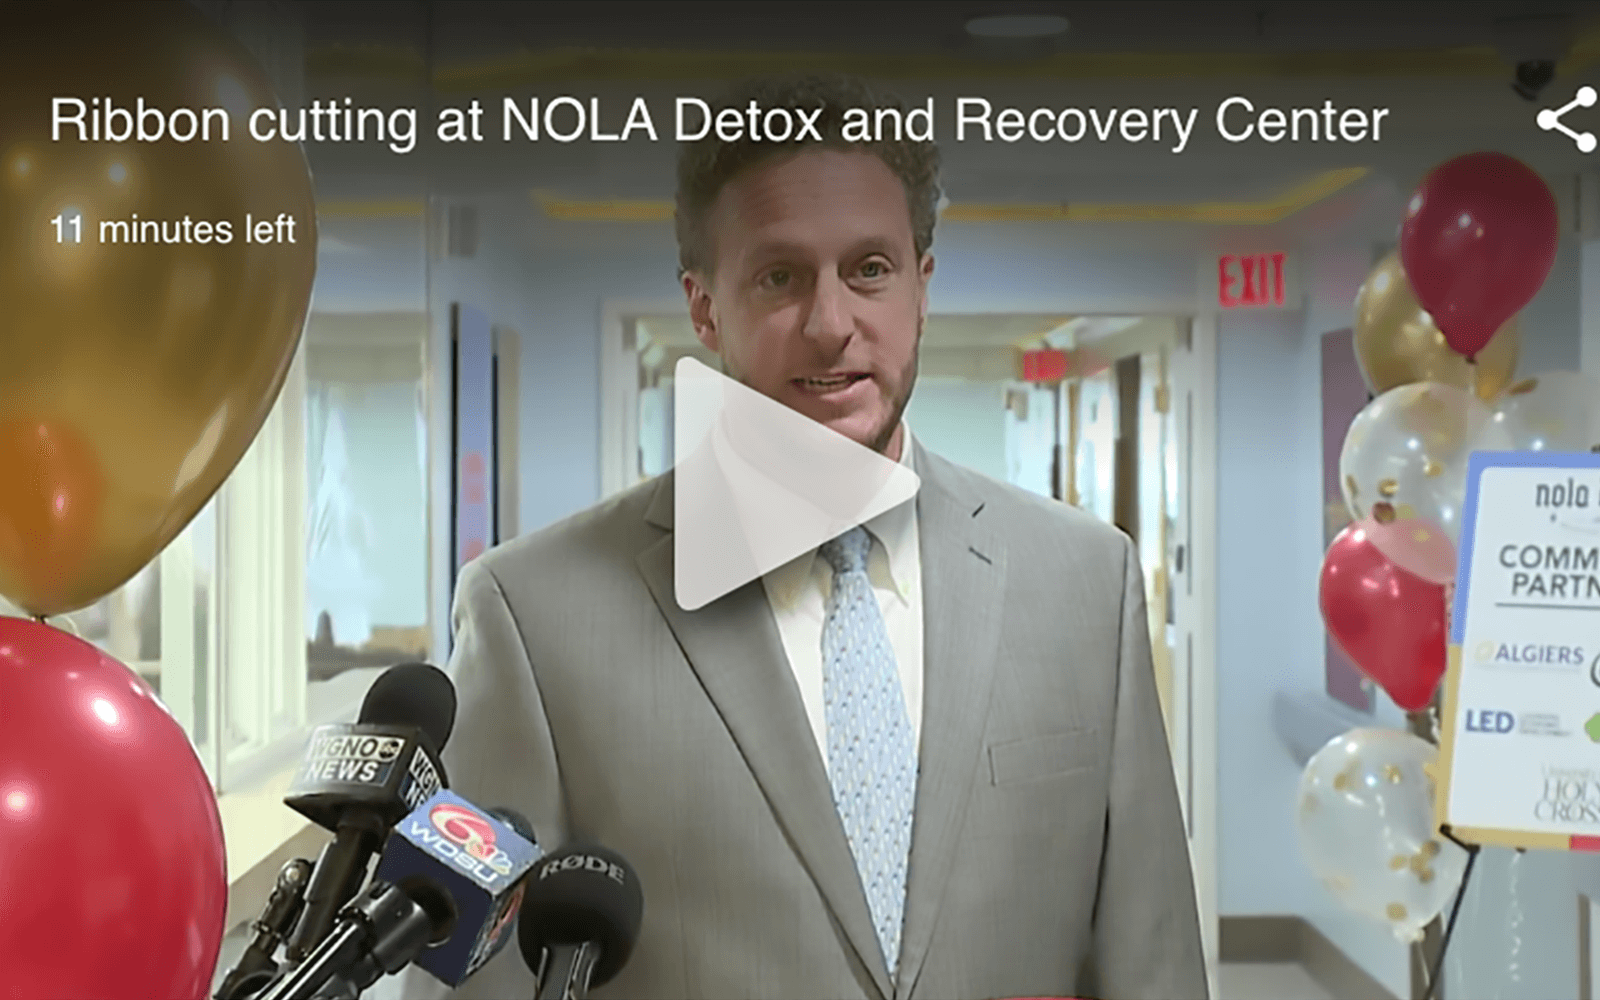 Watch: Ribbon cutting at NOLA Detox and Recovery Center - NOLA Detox and Recovery Center